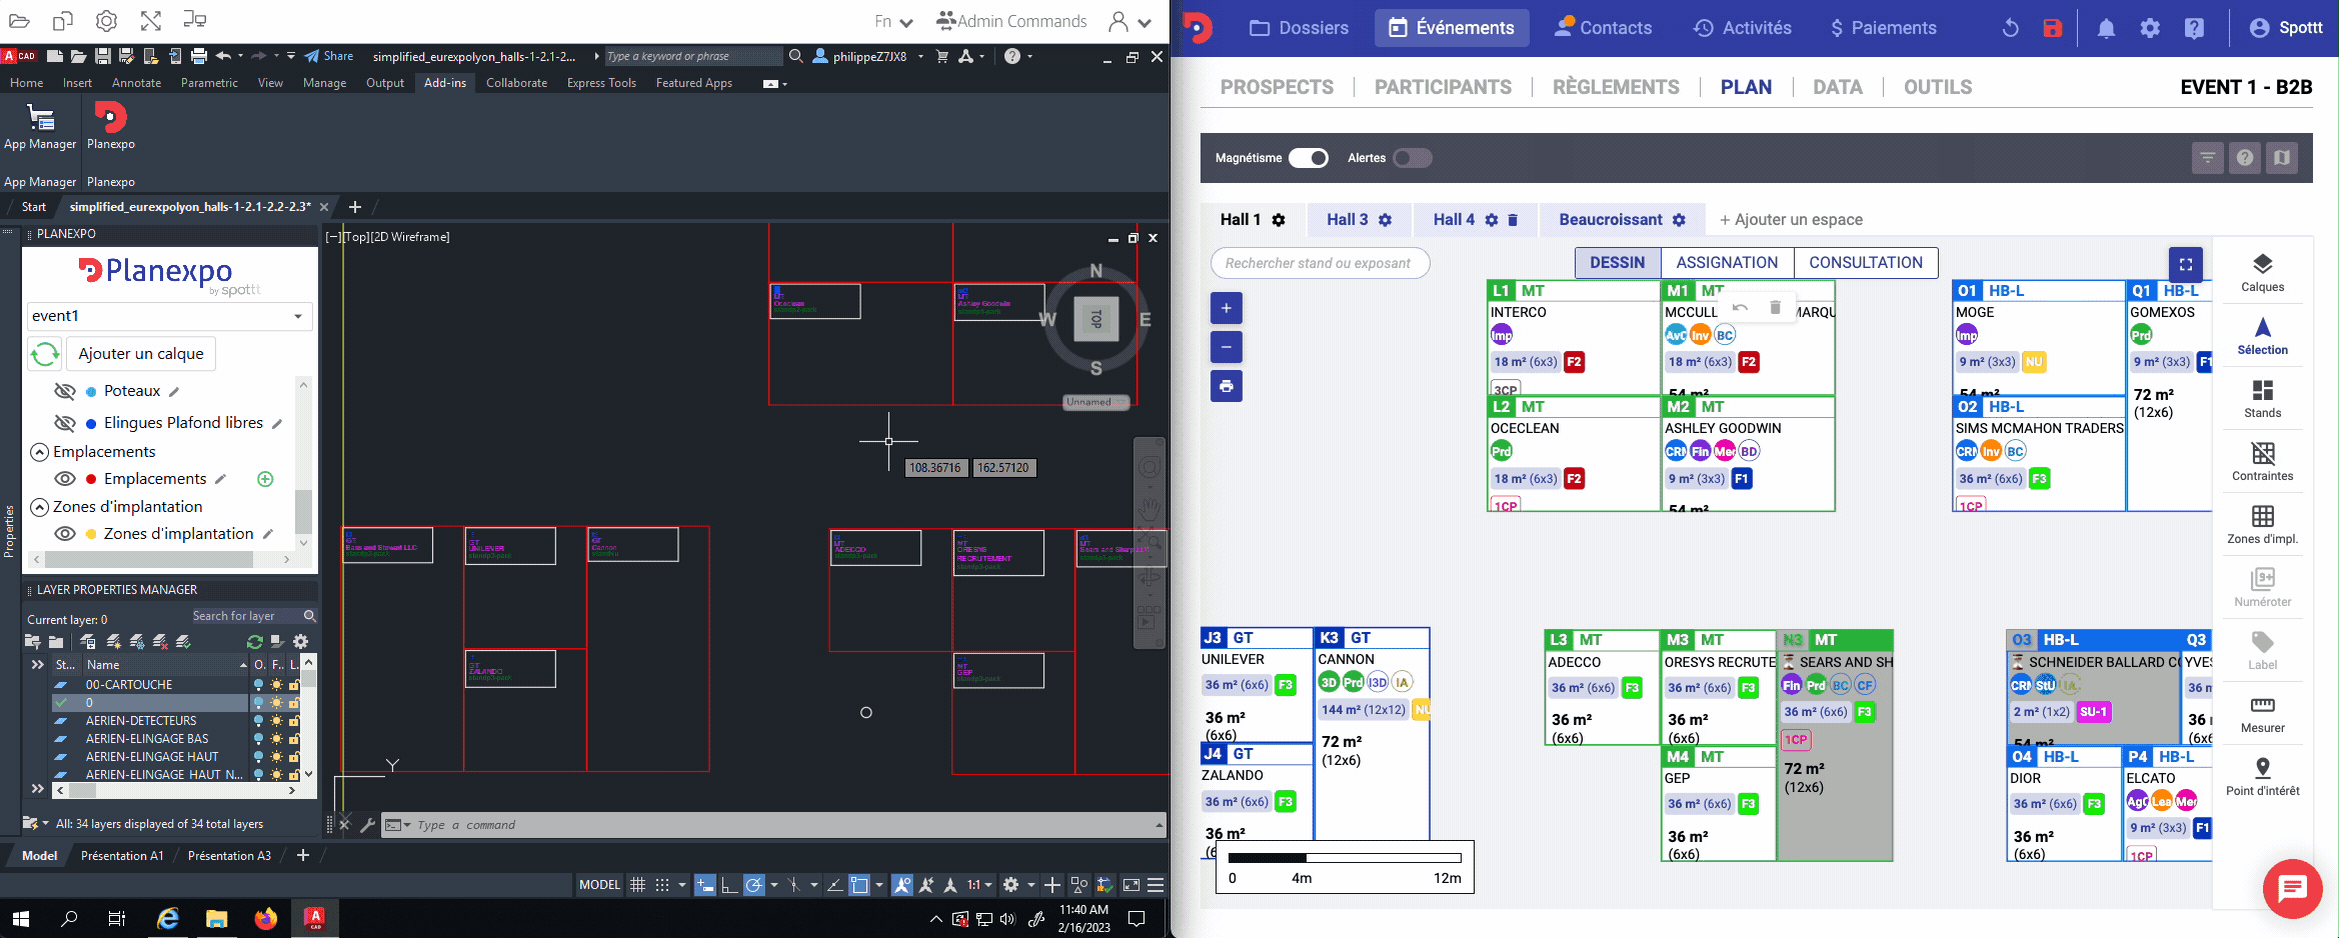 Vue du plan d'implantation interactif via Autocad. Sur le côté gauche, on voit l'outil Autocad et sur le côté droit, on voit l'application directe sur l'outil de gestion événementielle Planexpo.